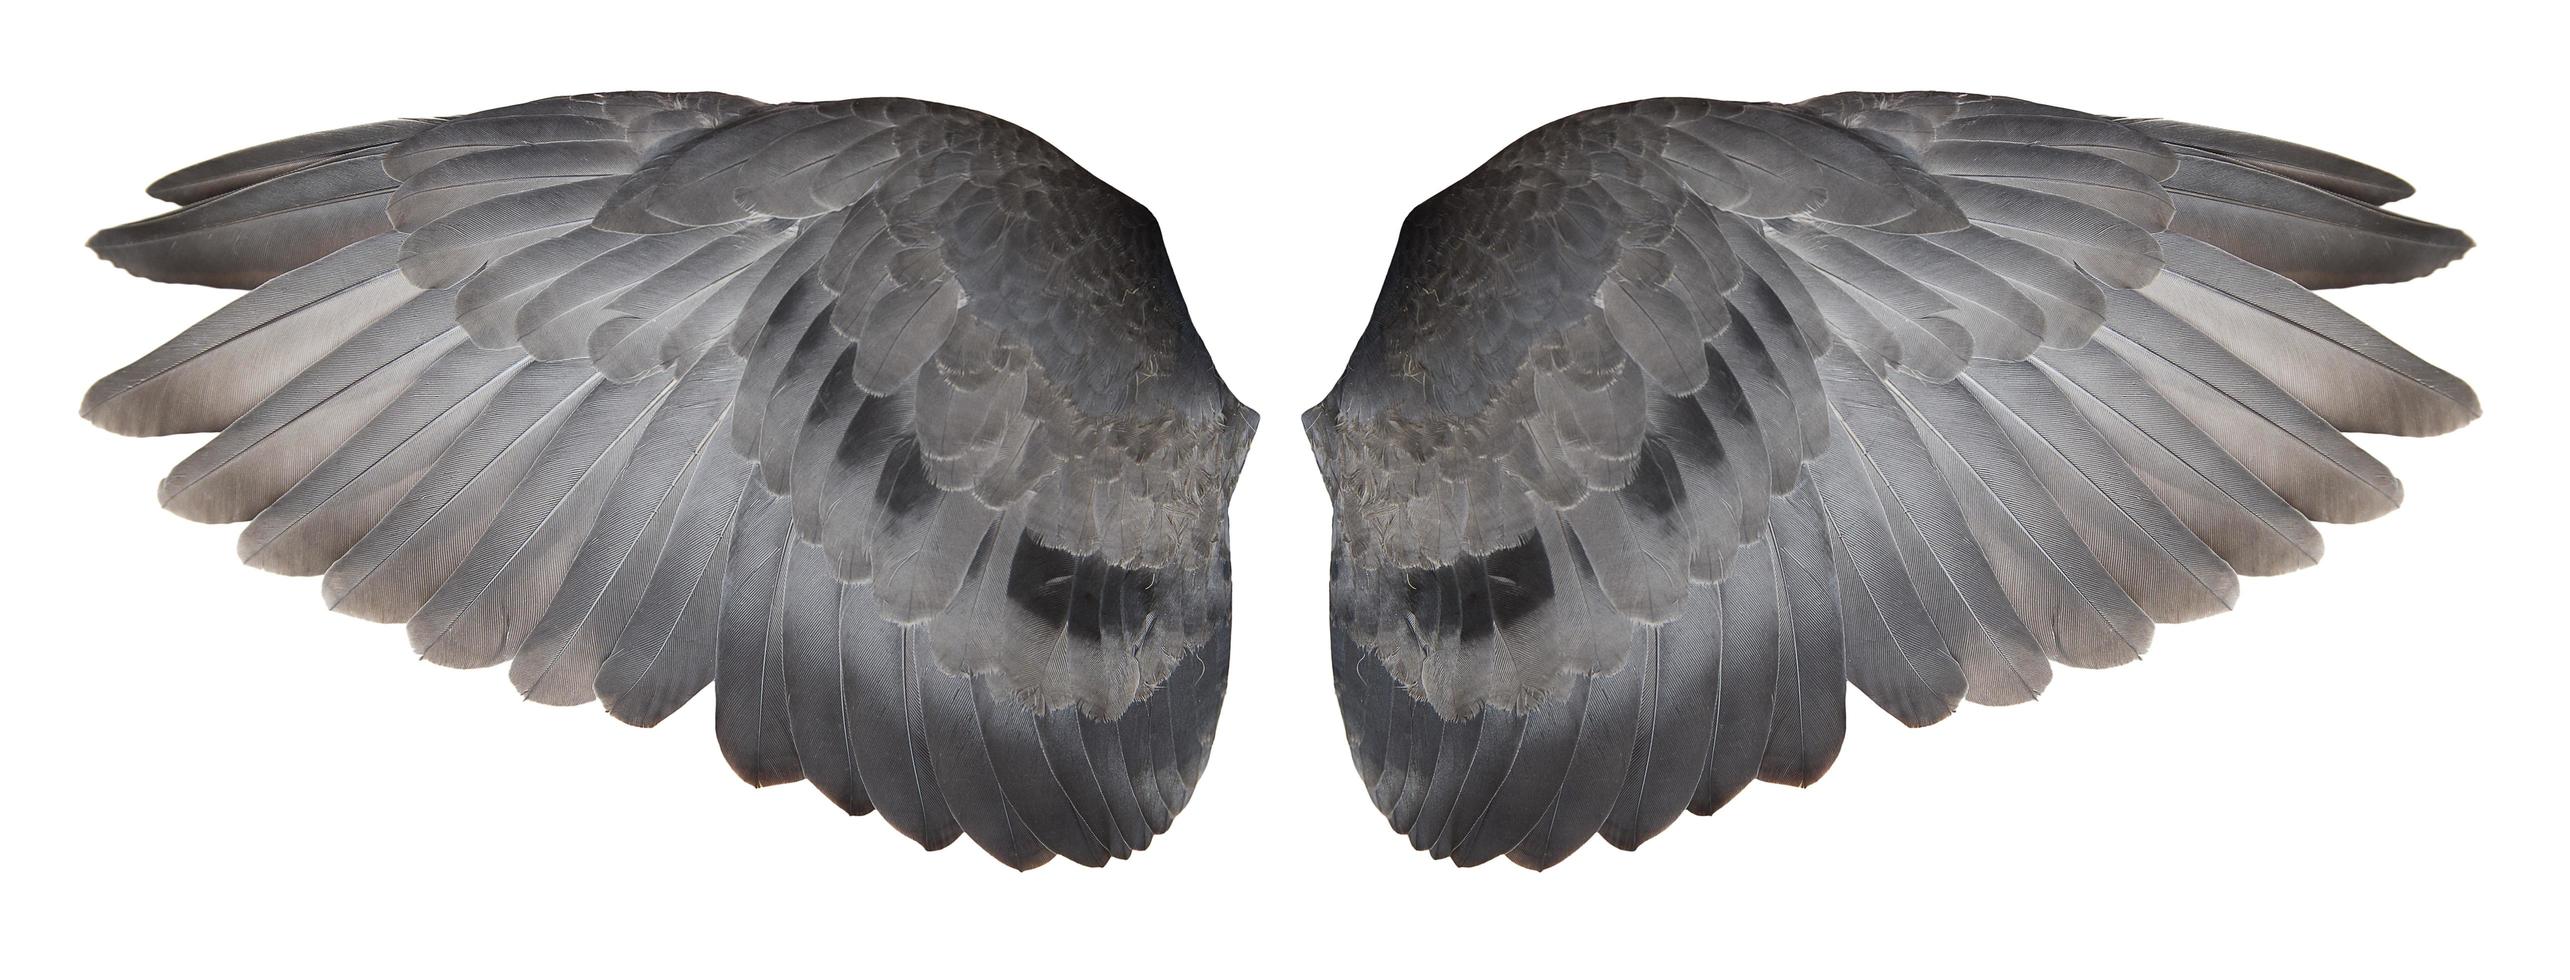 Taubenflügel isoliert auf weißem Hintergrund, mit Beschneidungspfaden. foto